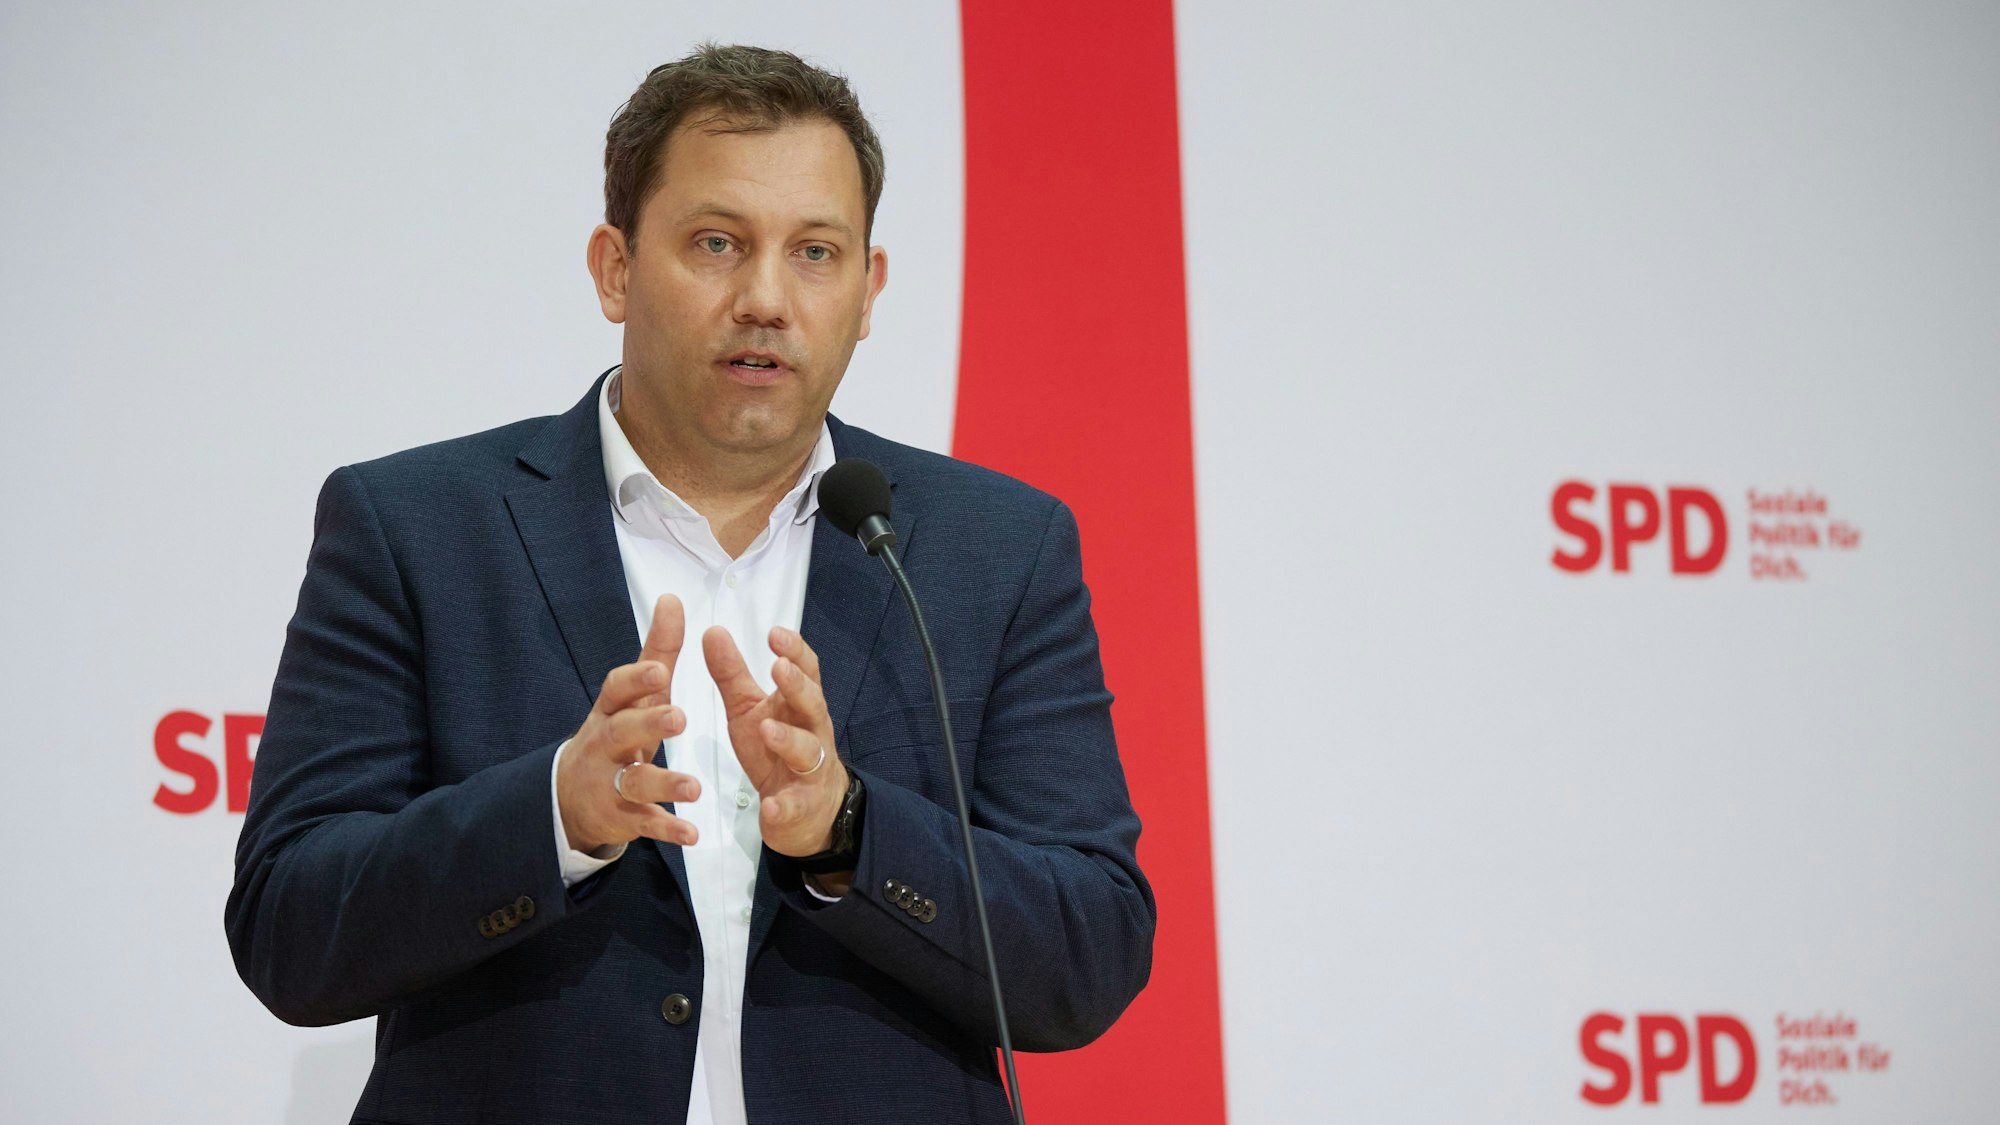 Lars Klingbeil (SPD), Bundesvorsitzender, gibt ein Statement nach einer Klausurtagung des SPD-Parteivorstandes im Willy-Brandt-Haus.